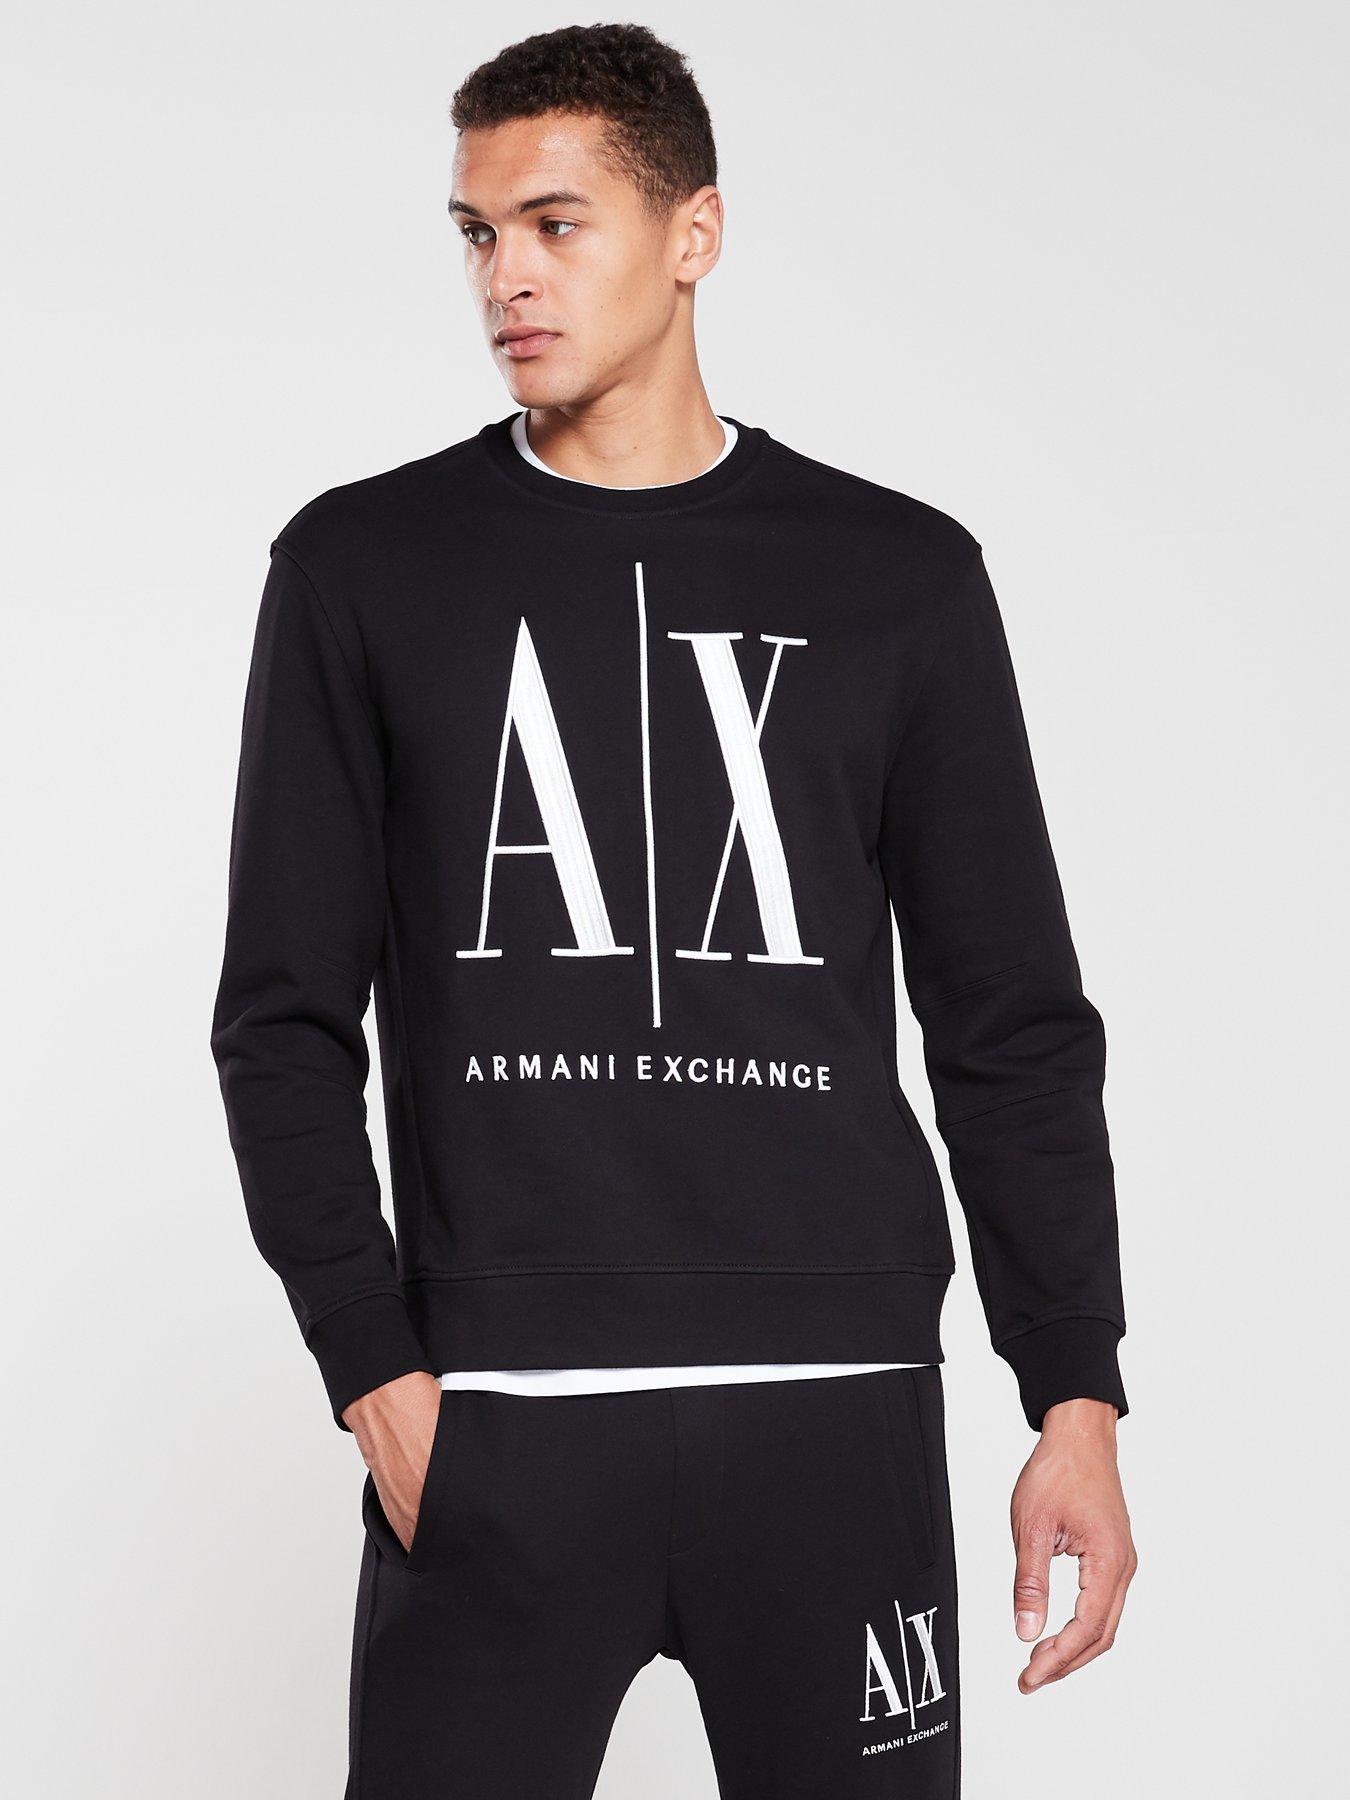 armani exchange black hoodie